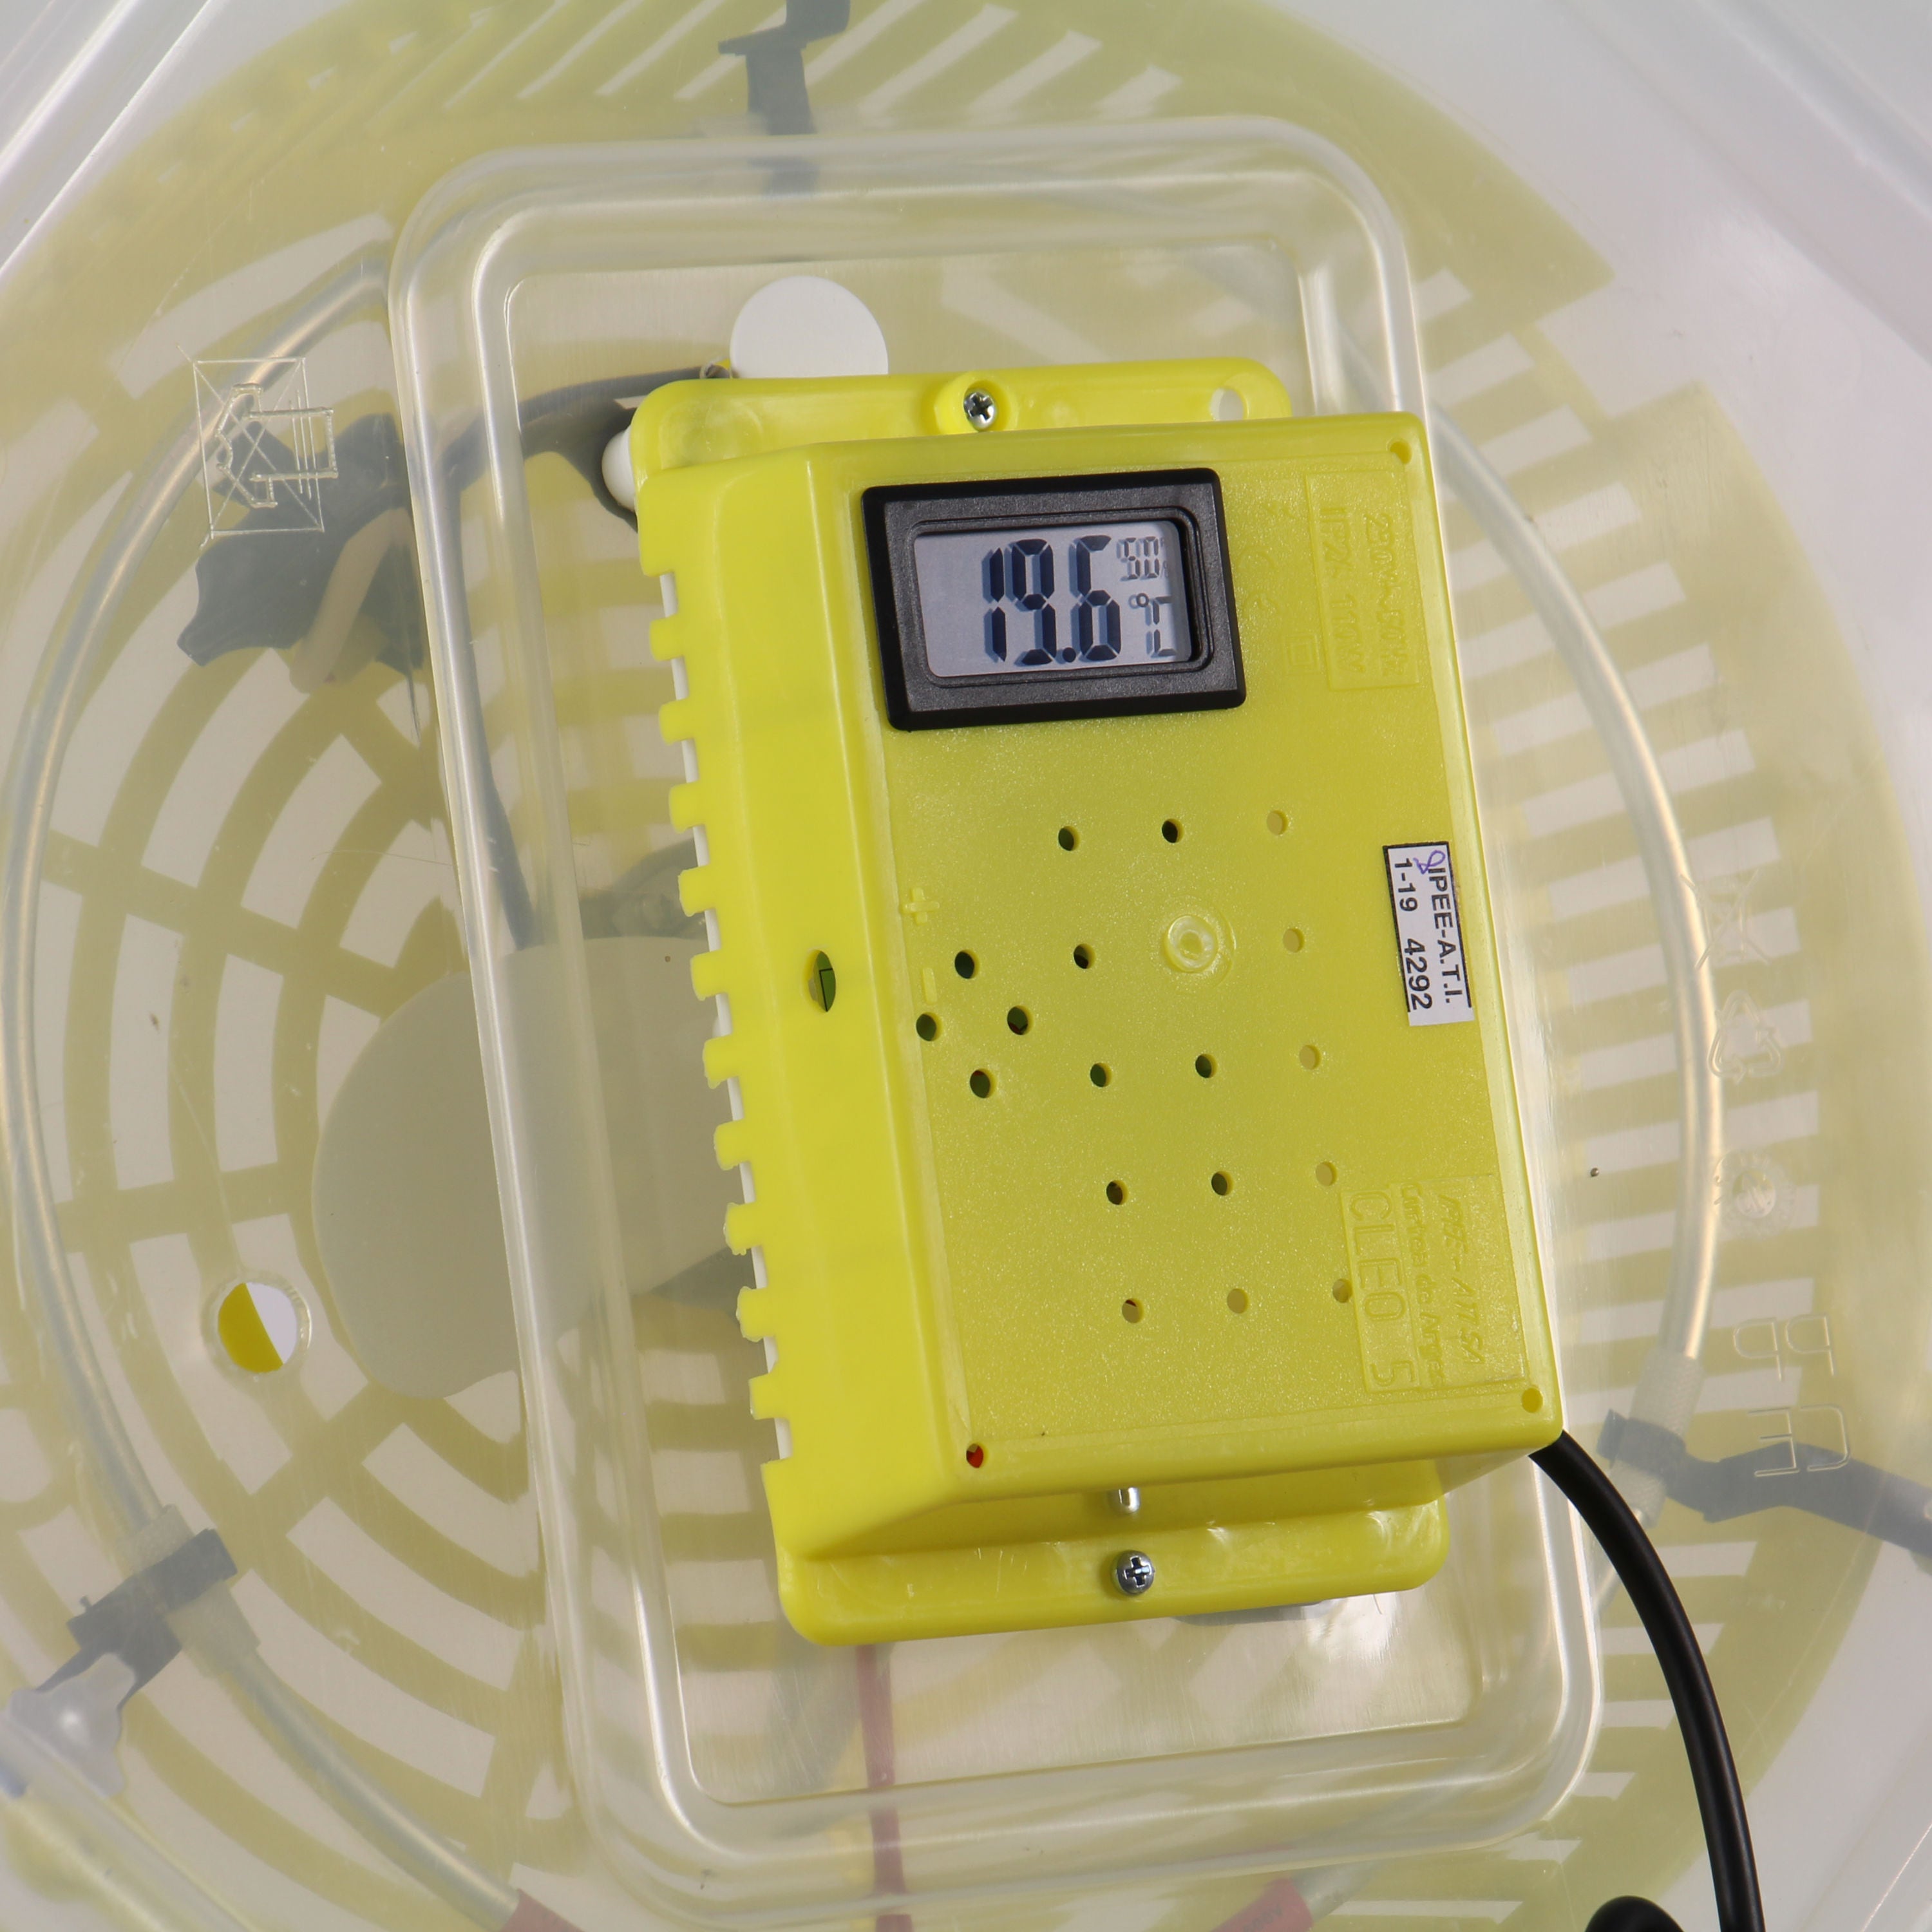 Incubator electric pentru oua, Cleo 5DTH, cu dispozitiv intoarcere, termohigrometru